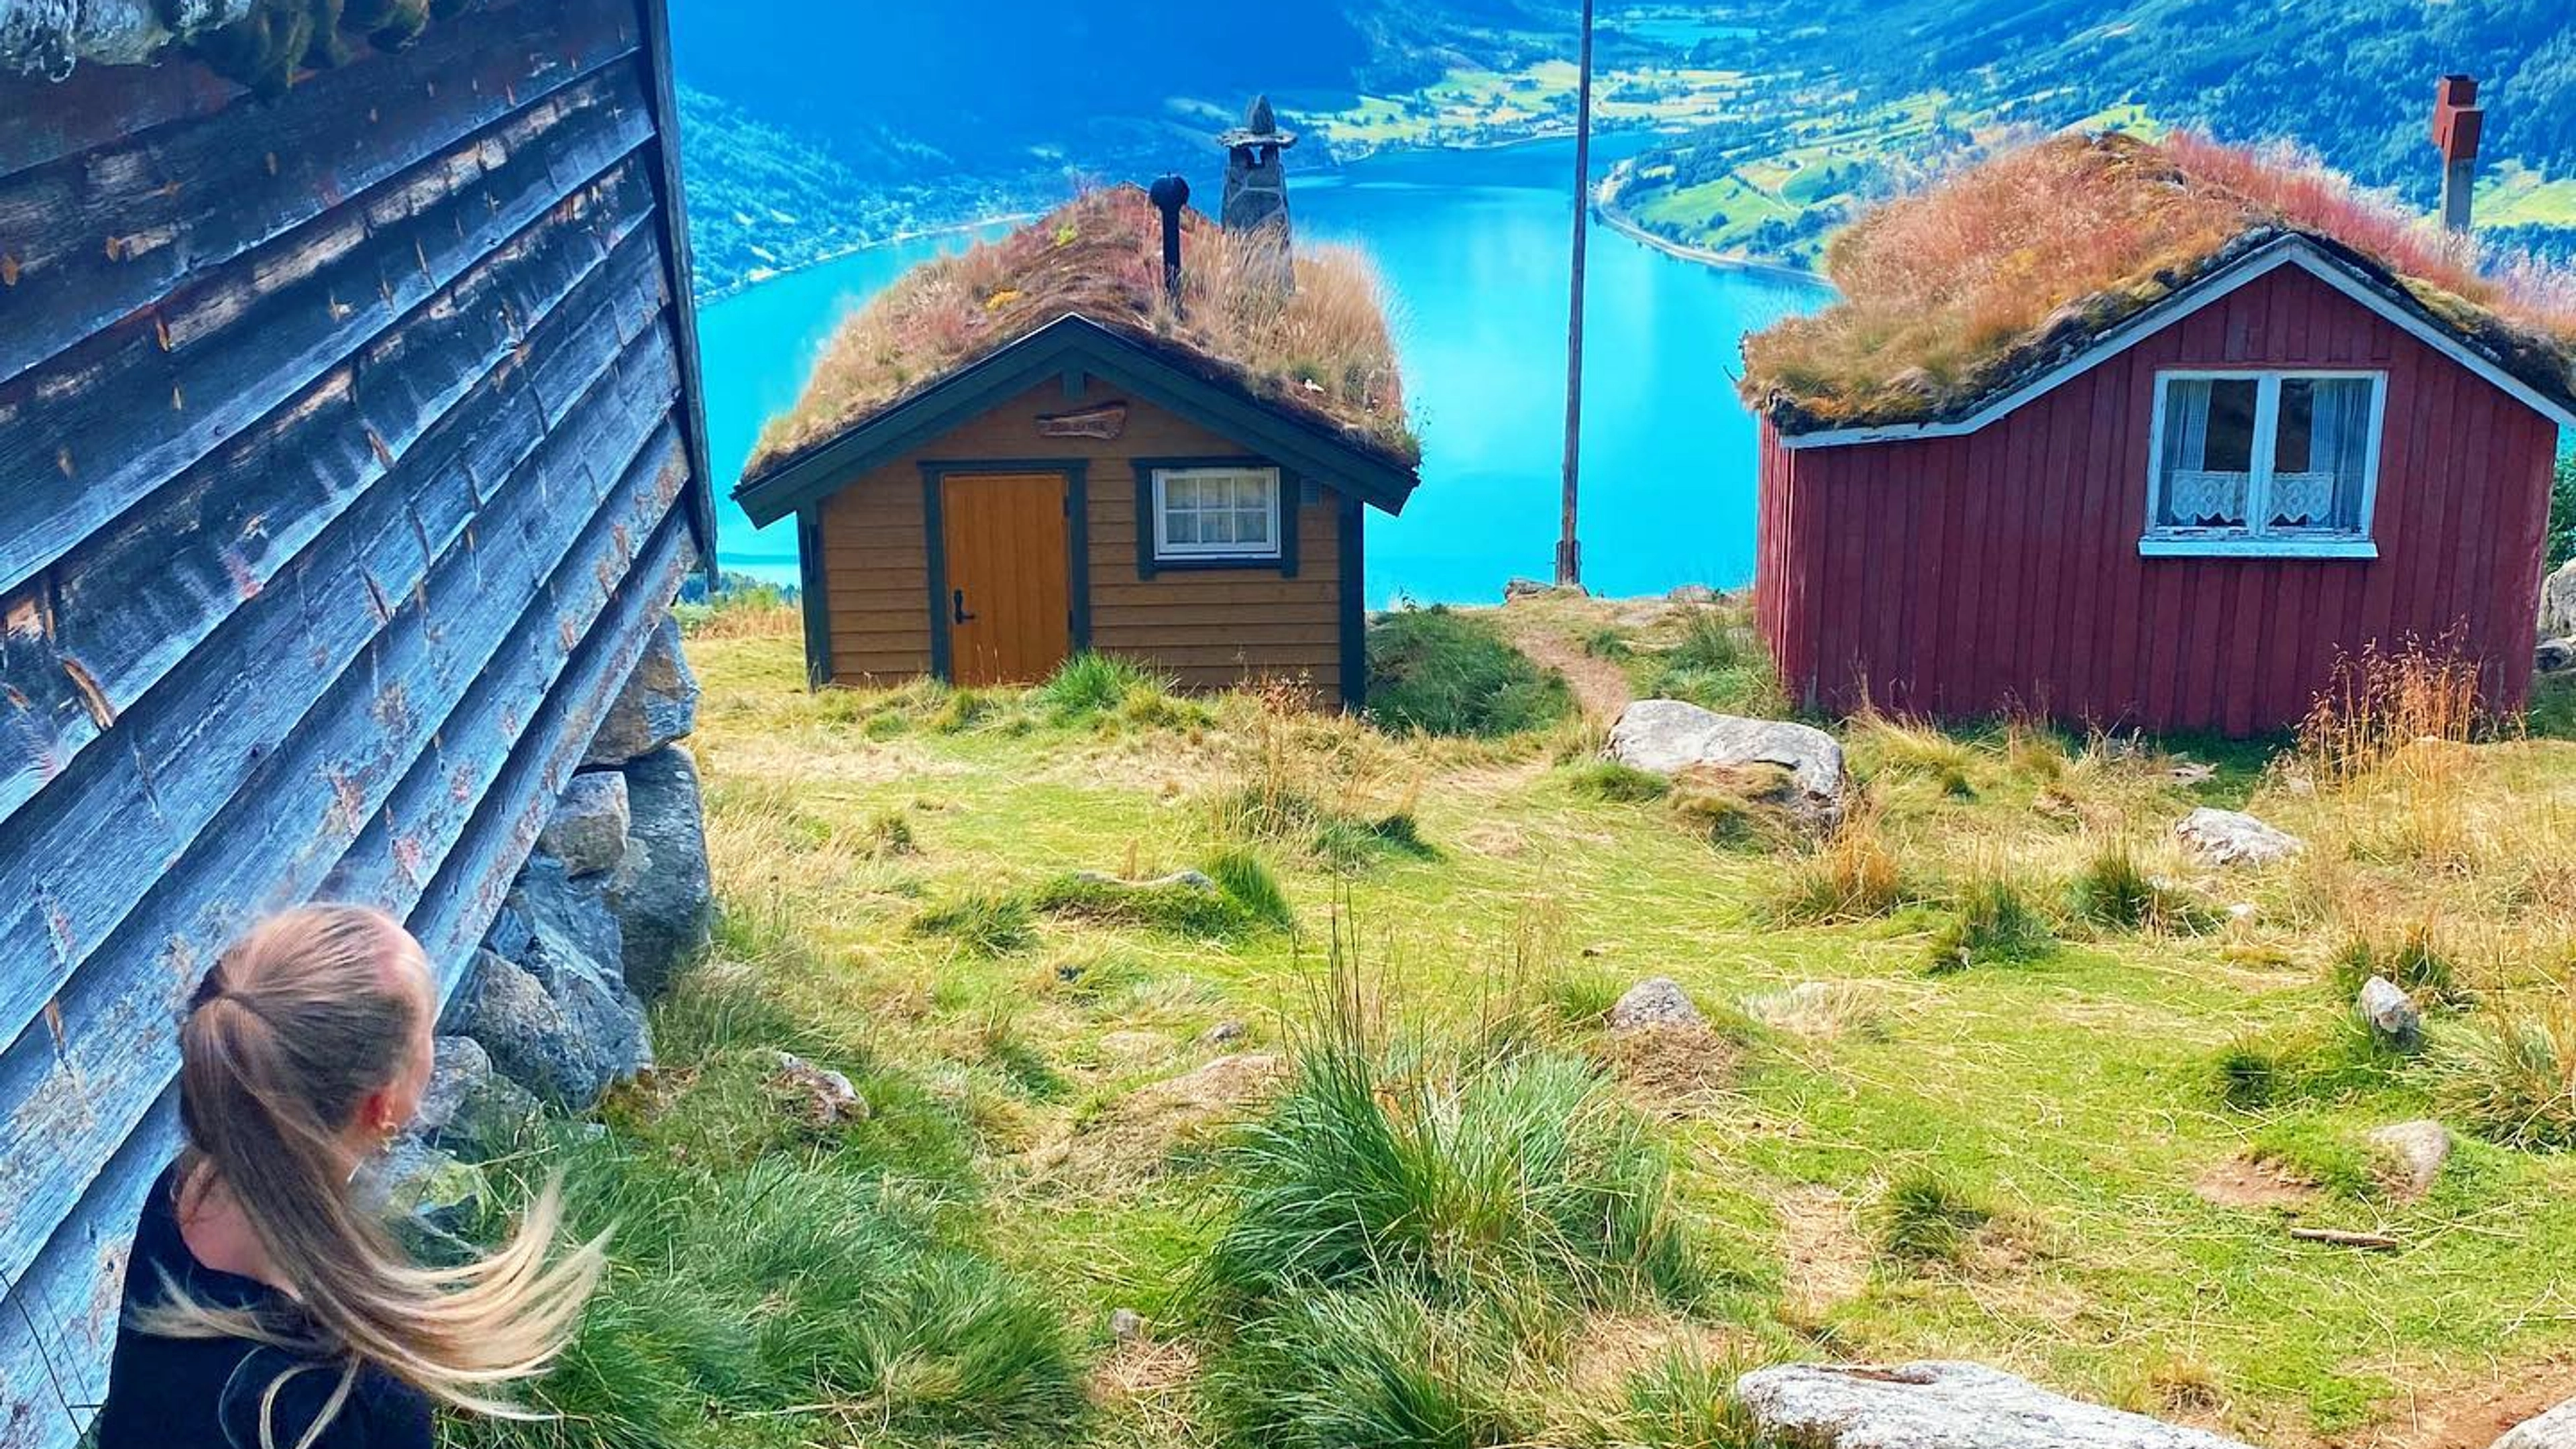 Rakssetra in Loen, Norway